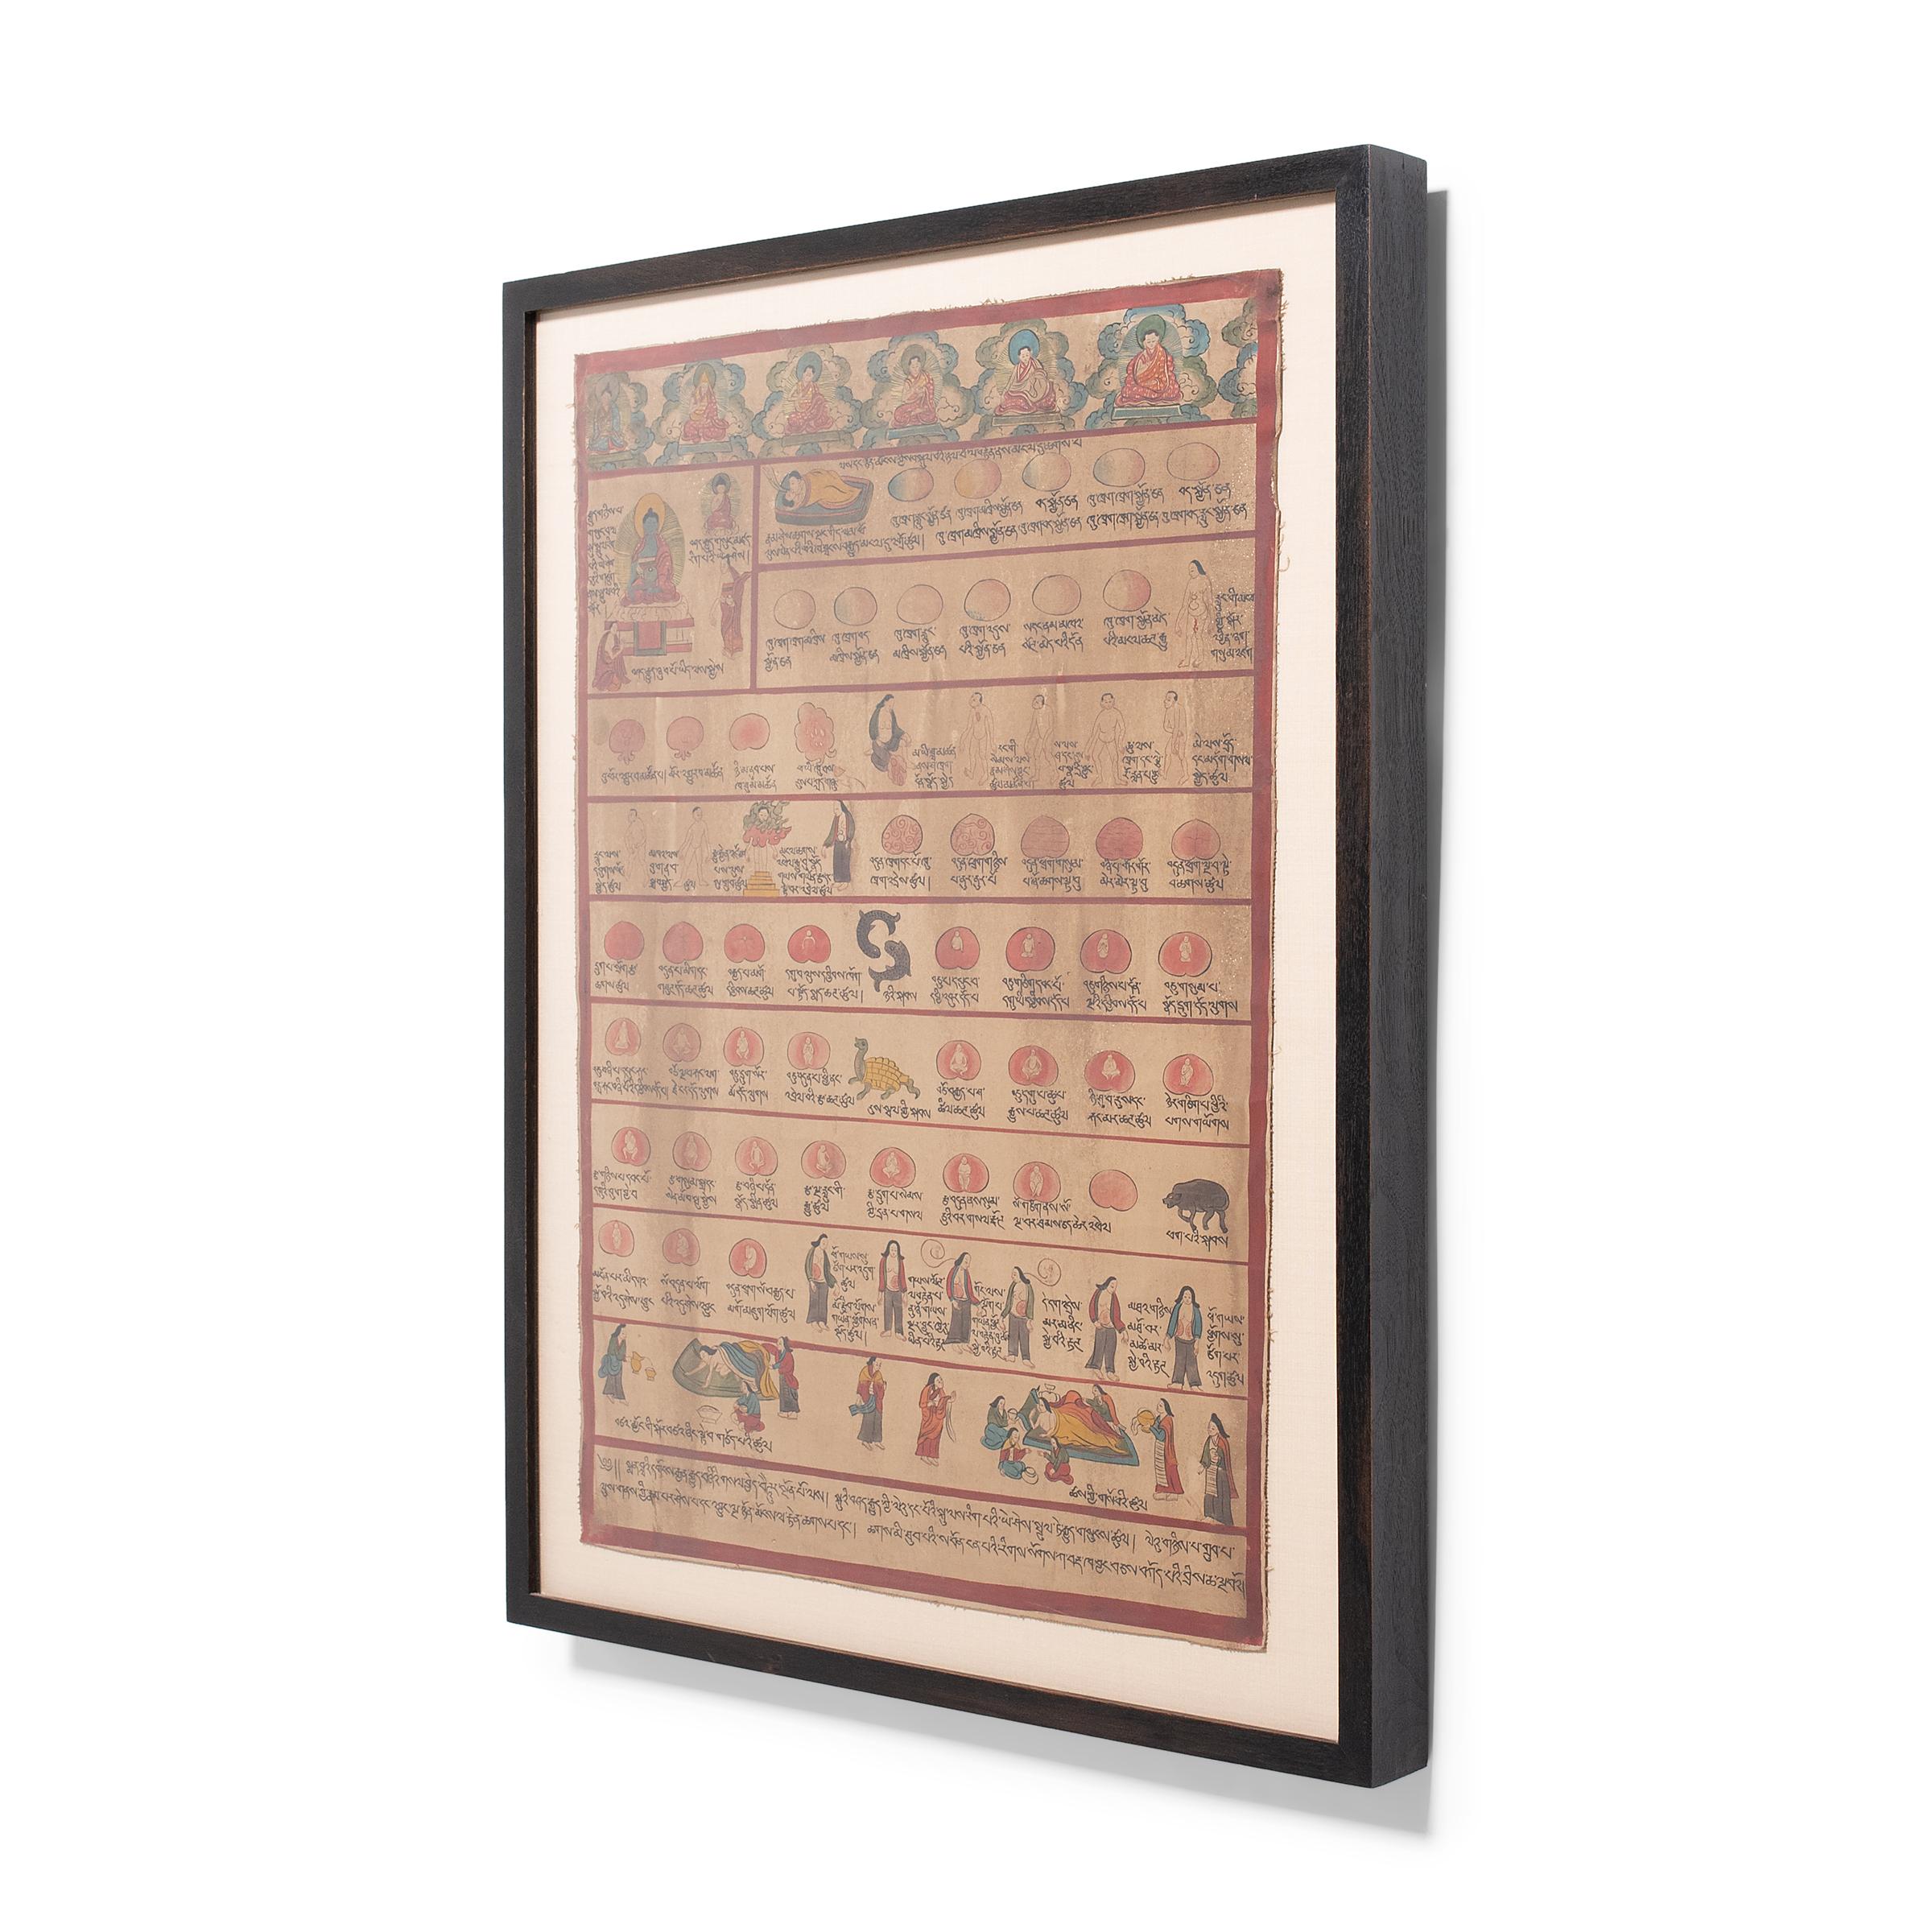 Cette peinture folklorique tibétaine magnifiquement détaillée date du milieu du XXe siècle et partage des connaissances traditionnelles dans le style des thangkas bouddhistes peints ou des cartes manuscrites. Conçue comme une aide visuelle à